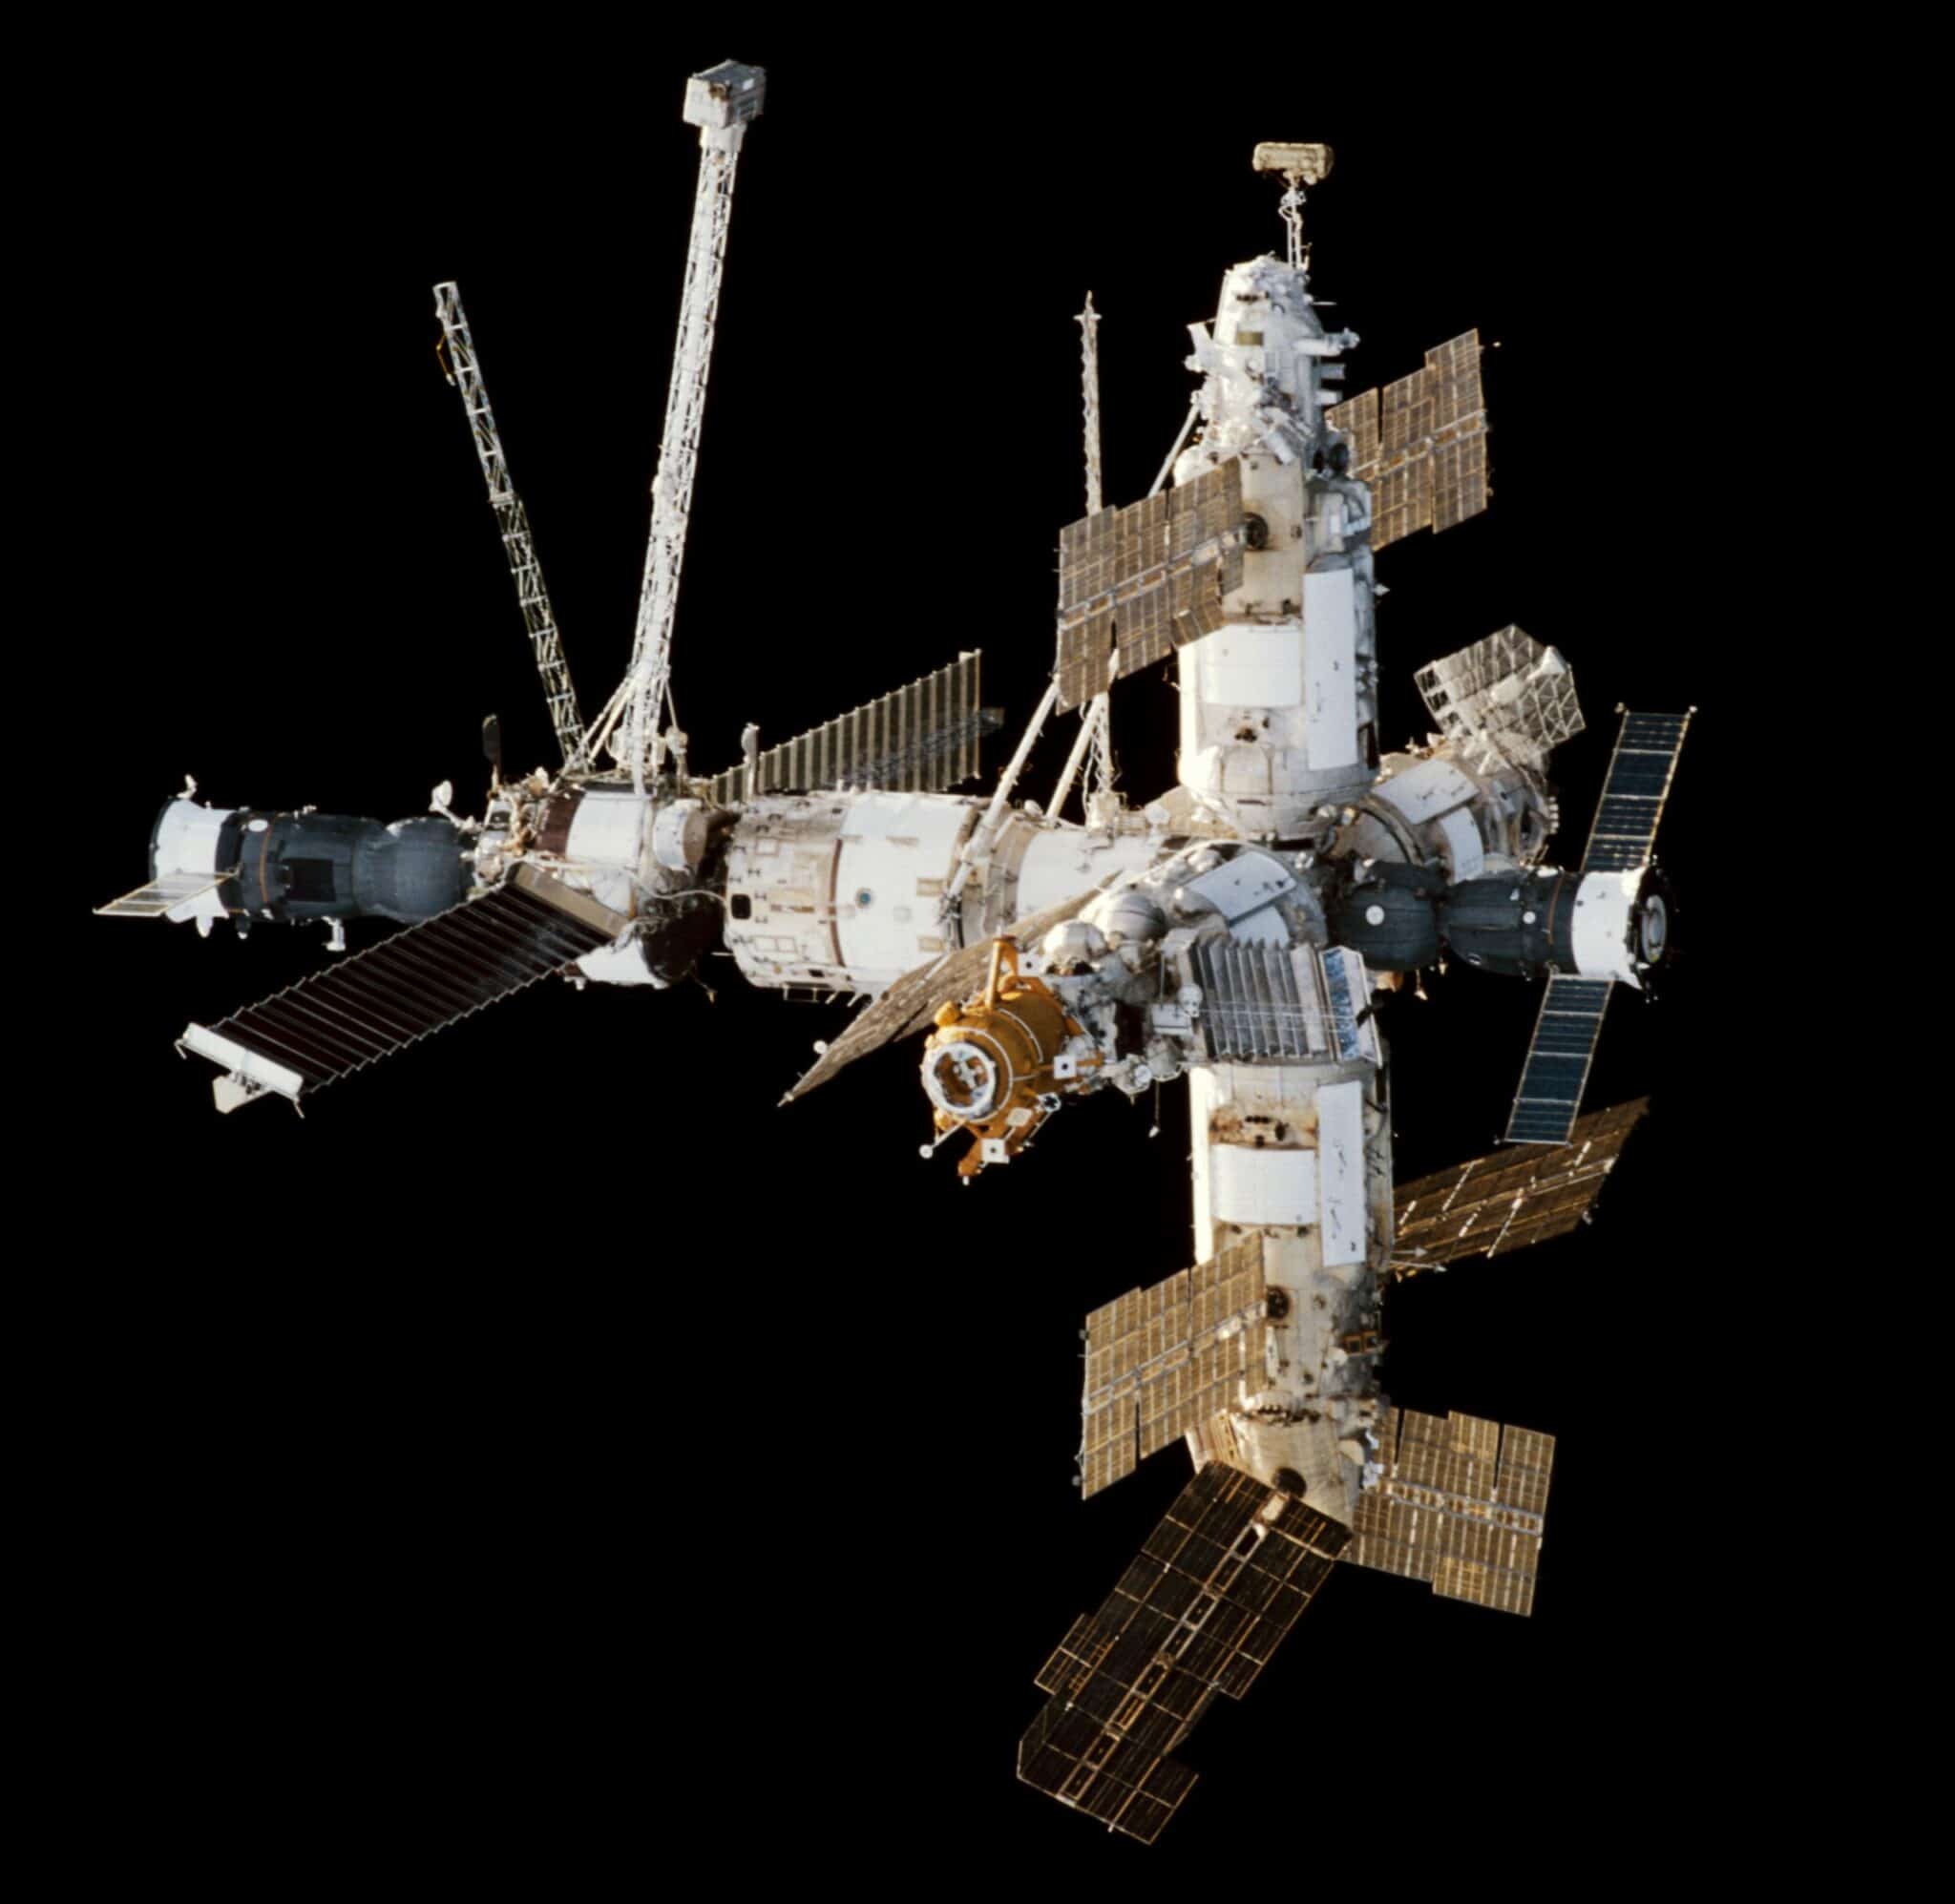 Рогозин заявил, что МКС теперь недосчитается одного модуля, и очертил бюджет национальной орбитальной станции